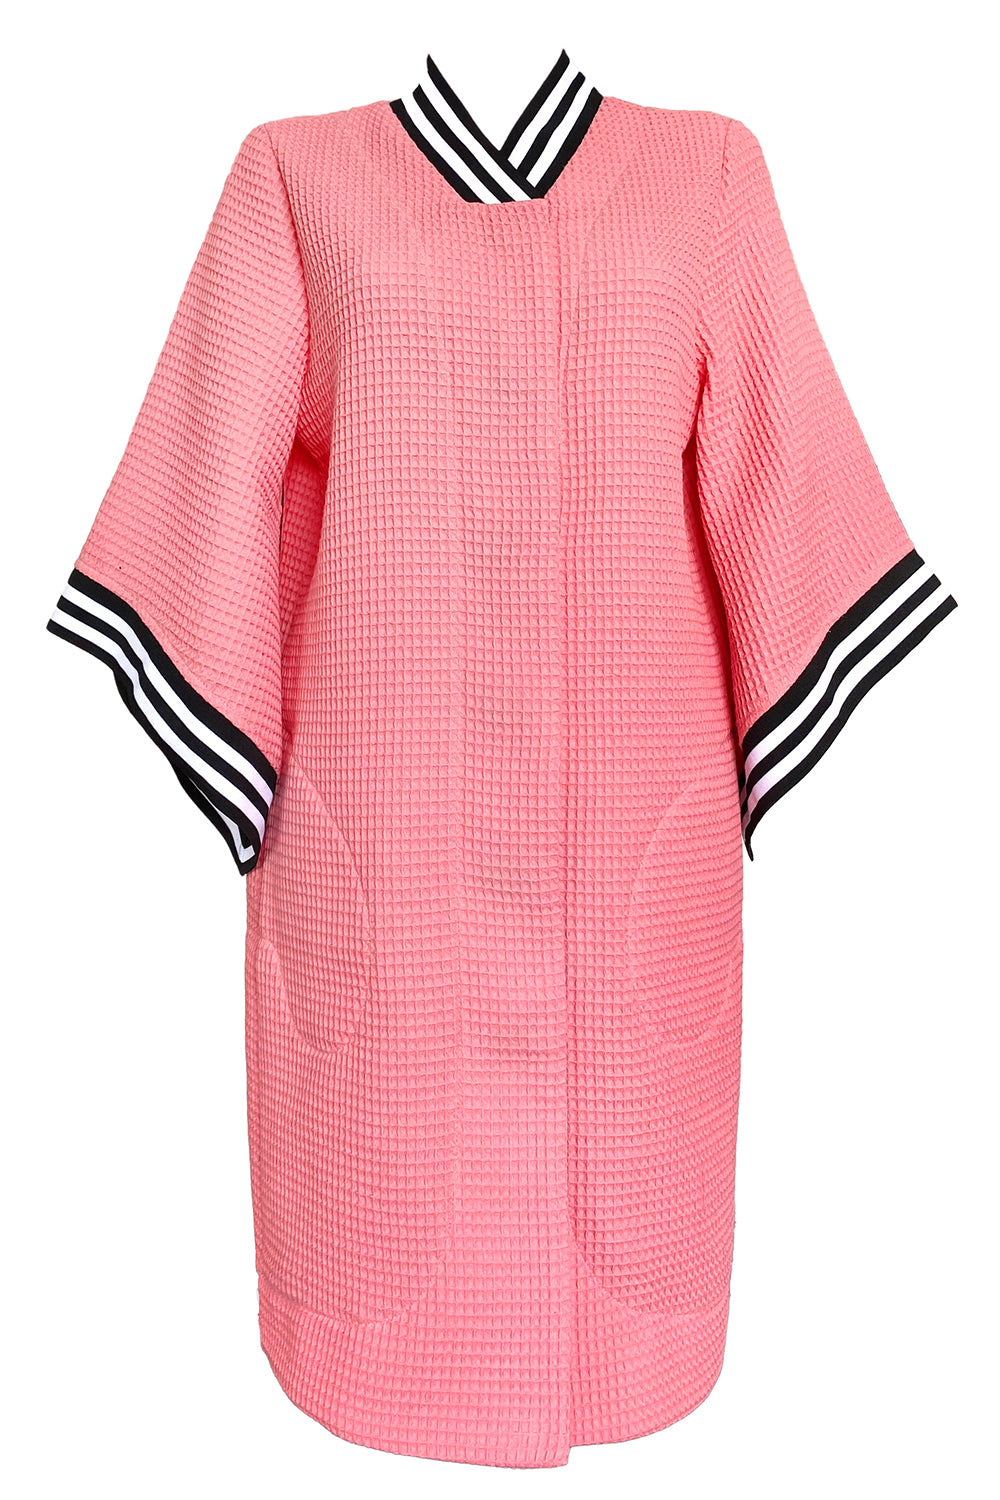 Kimono Gown - Bubblegum Pink – Kriss Soonik